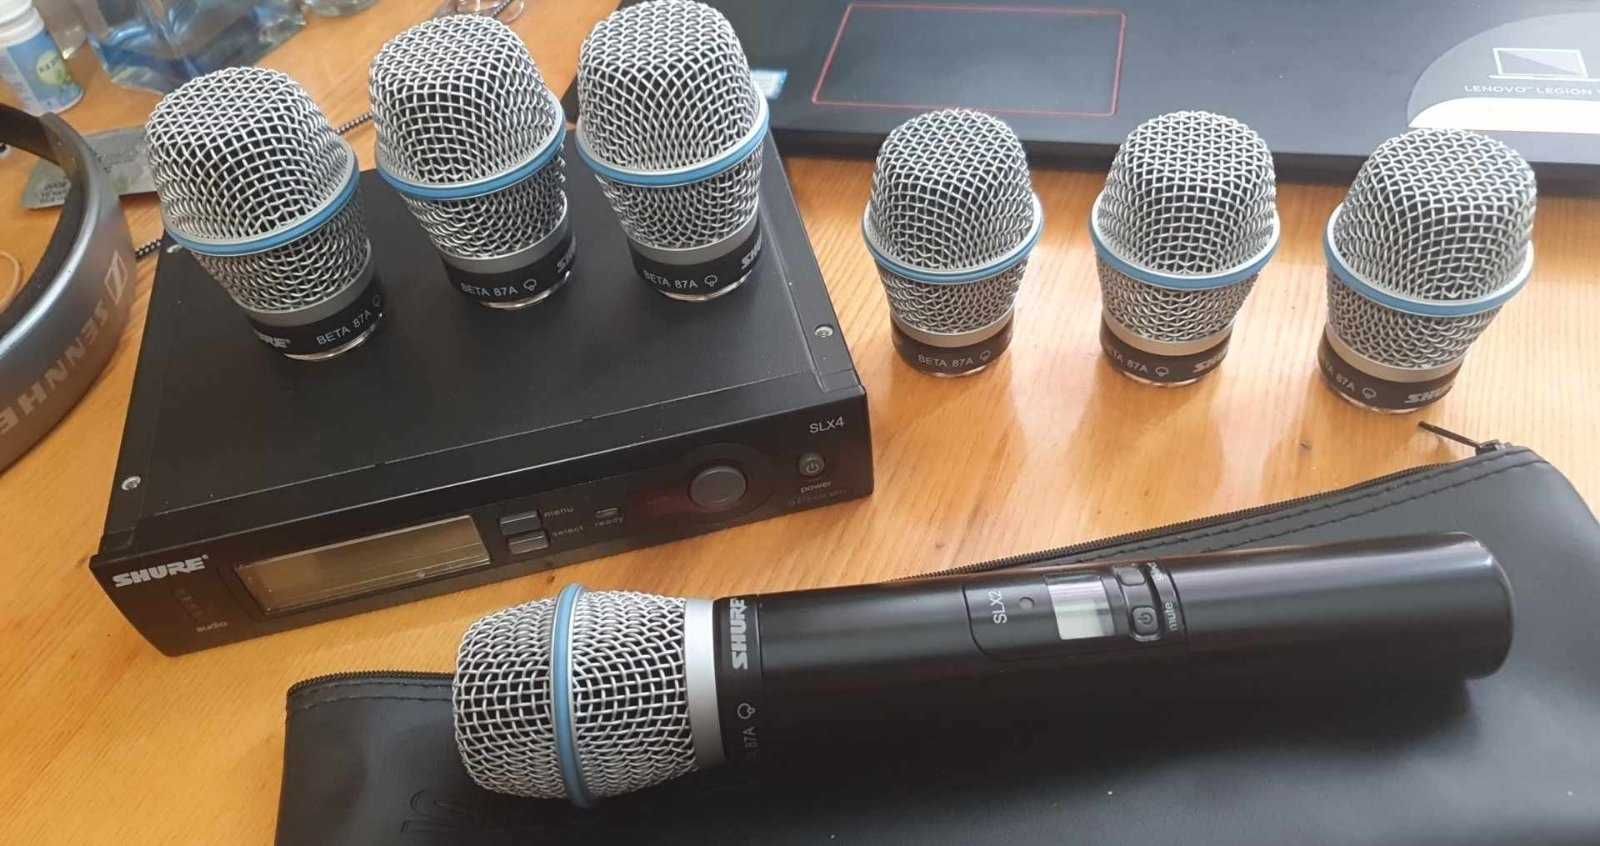 Радиомикрофон Shure Beta 87/Sm 58 beta 58 /SLX / Pgx/ULXp